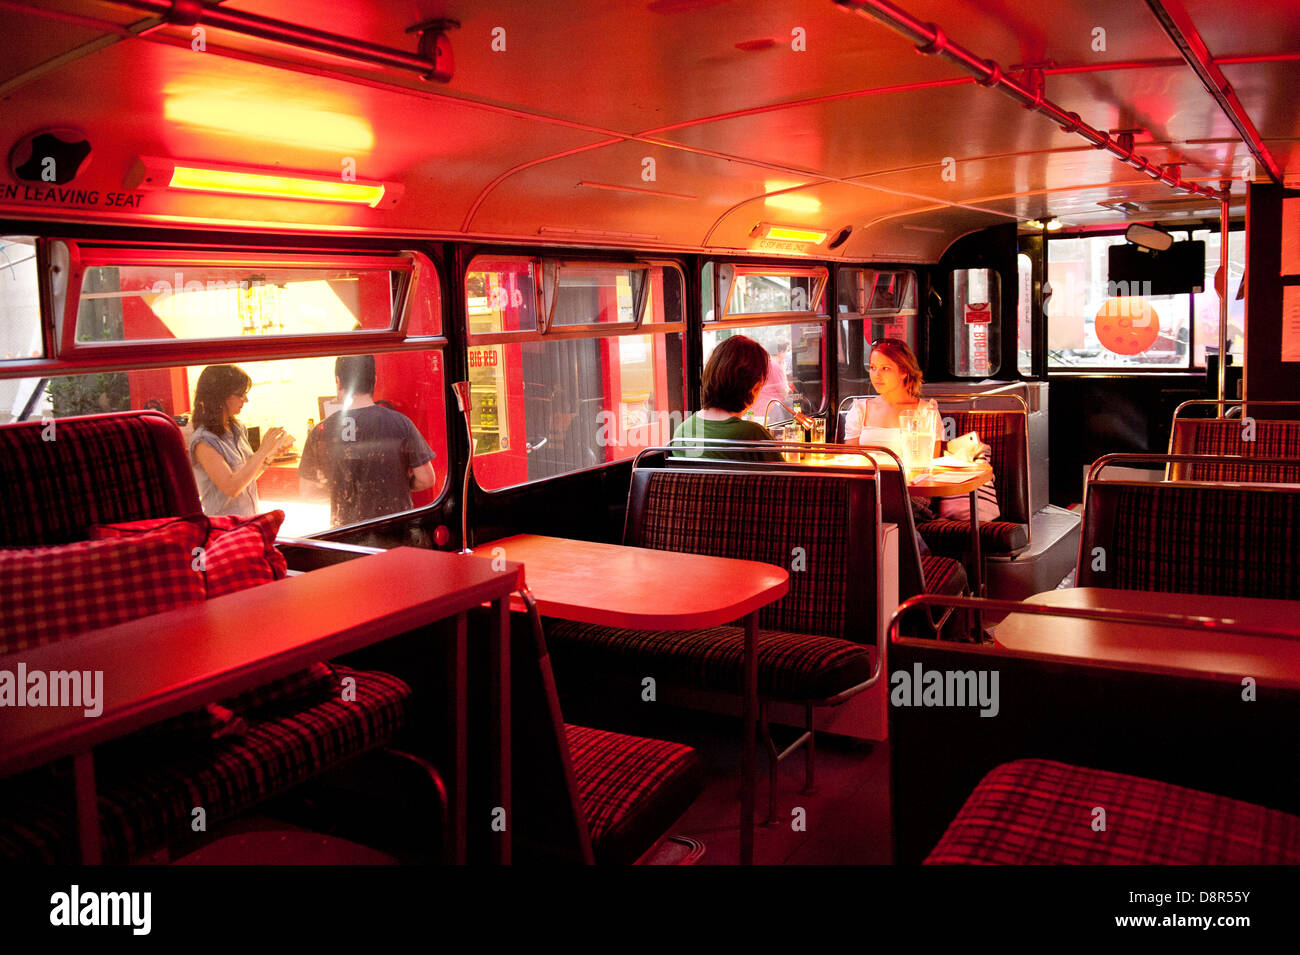 Die Big Red Bus - eine ehemalige Nummer 30-Doppeldecker-Bus. Nicht mehr  gebräuchlich, hat in eine Pizzeria verwandelt wurde Stockfotografie - Alamy